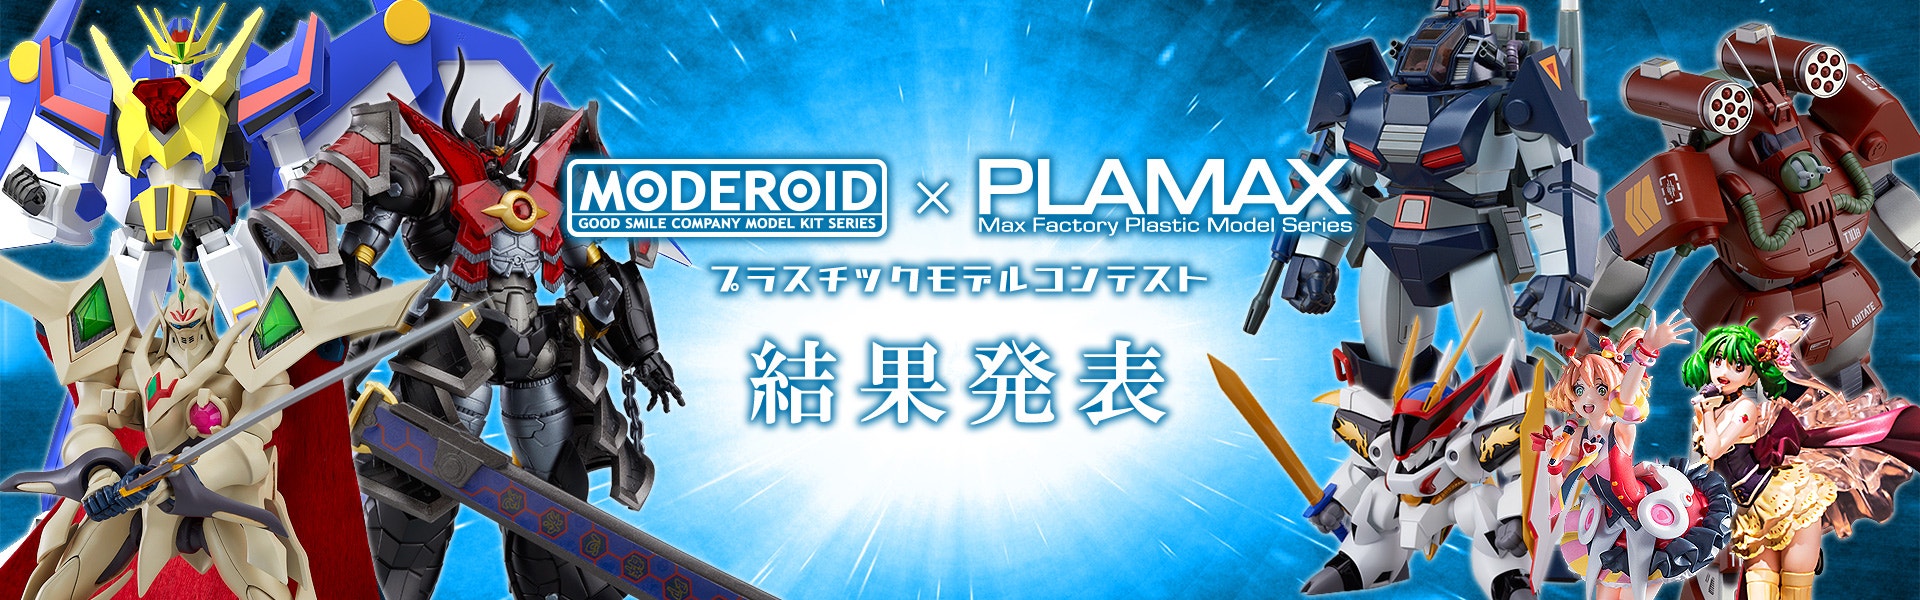 MODEROID × PLAMAX プラスチックモデルコンテスト